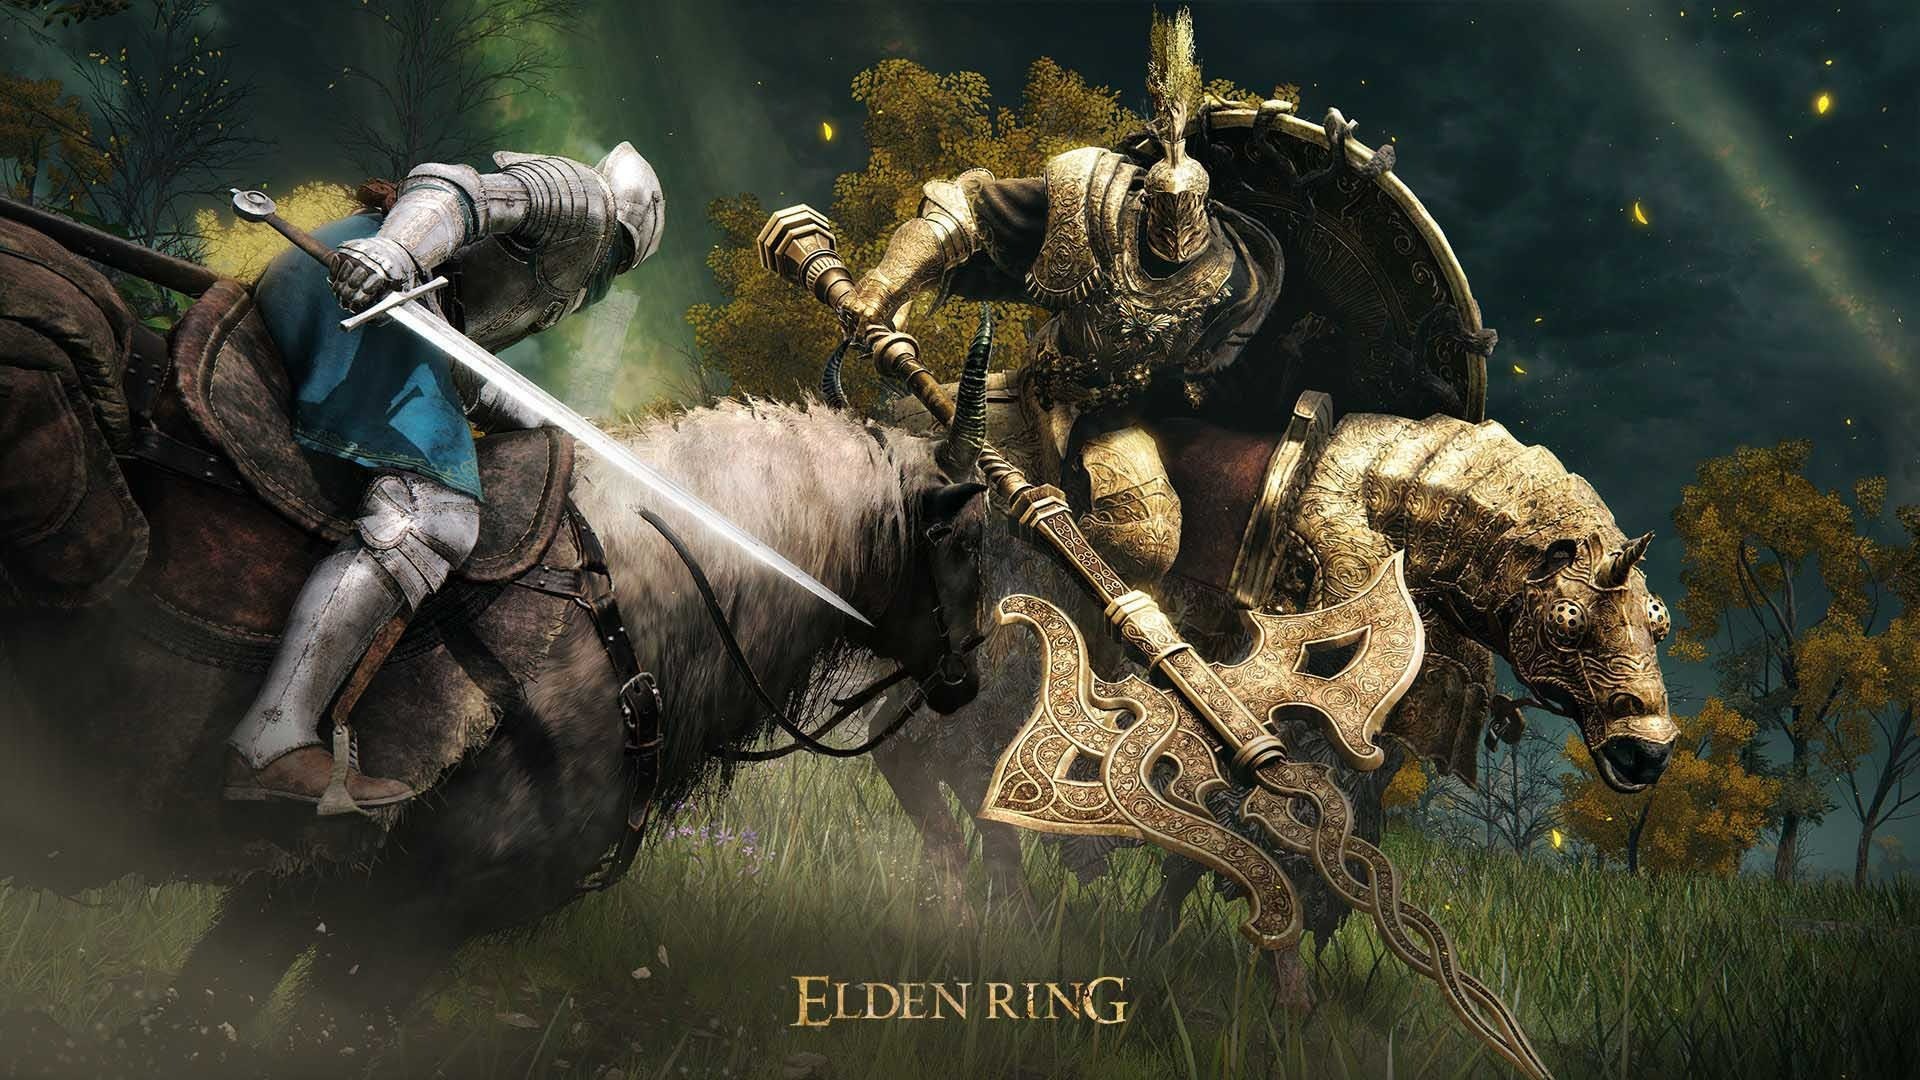 Elden Ring é o jogo do ano pelo The Game Awards 2022; veja vencedores